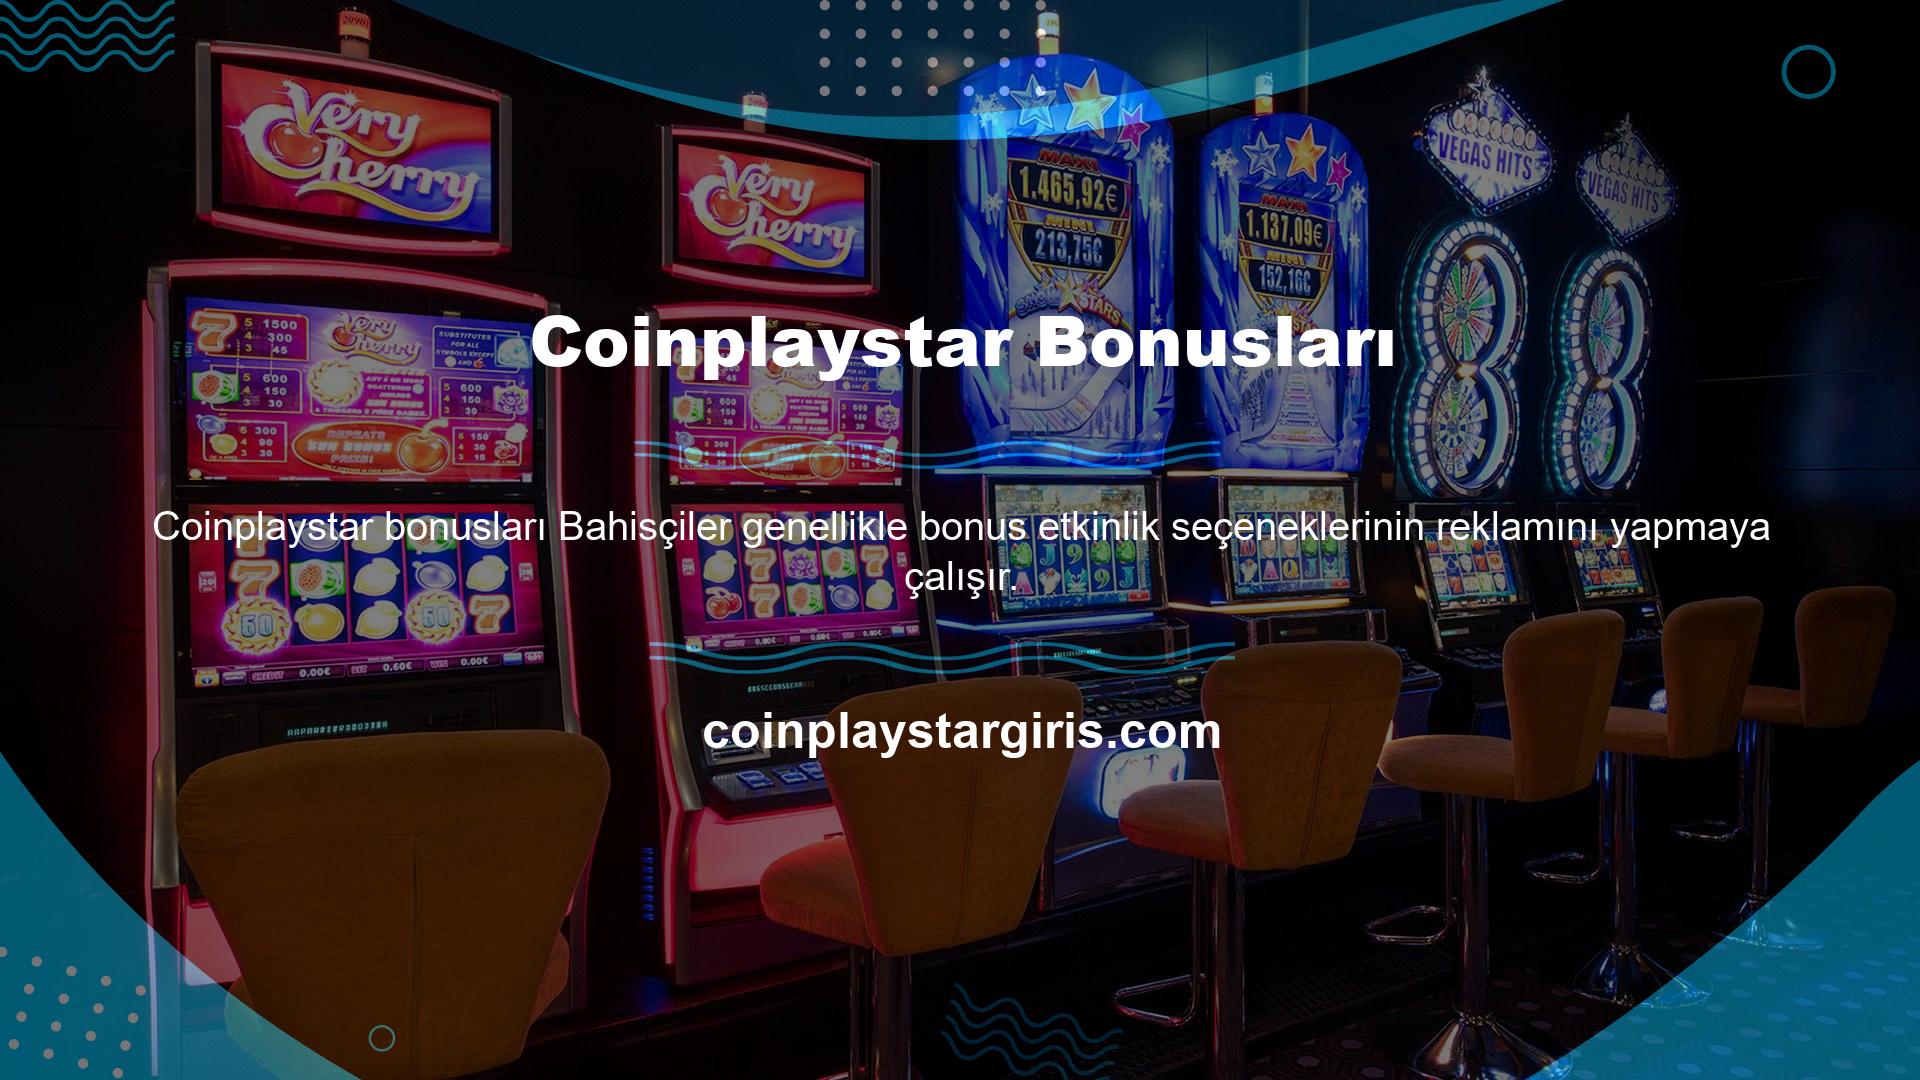 Aynı fikri daha avantajlı bir şekilde yaratan Coinplaystar, ödül hizmetlerini üyelerinin ilgi alanlarına göre uygulamaktadır